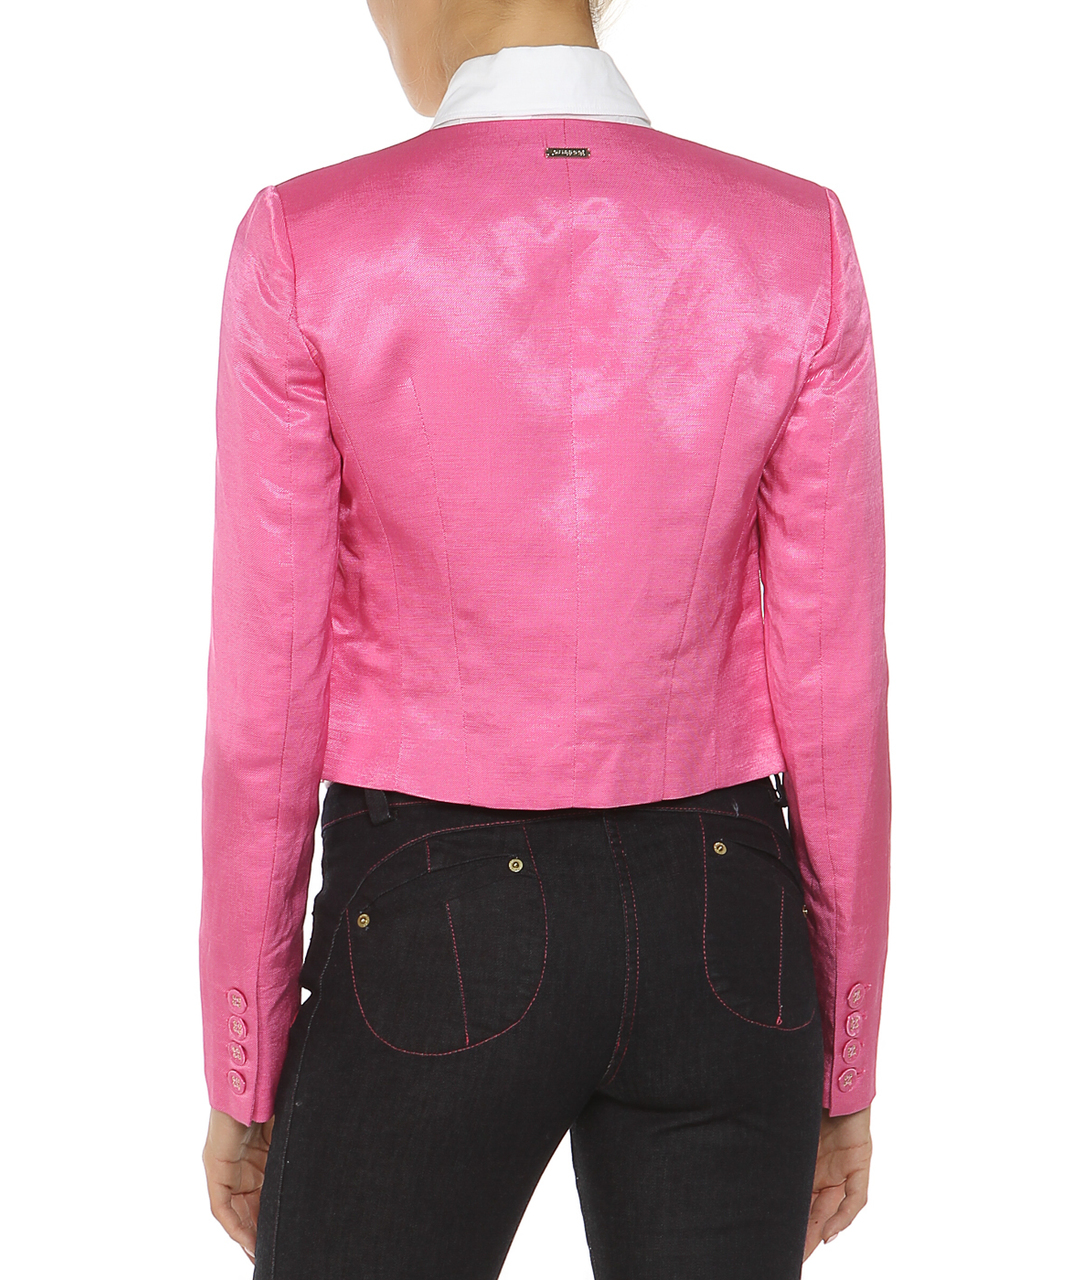 GIANFRANCO FERRE Розовый льняной жакет/пиджак, фото 2